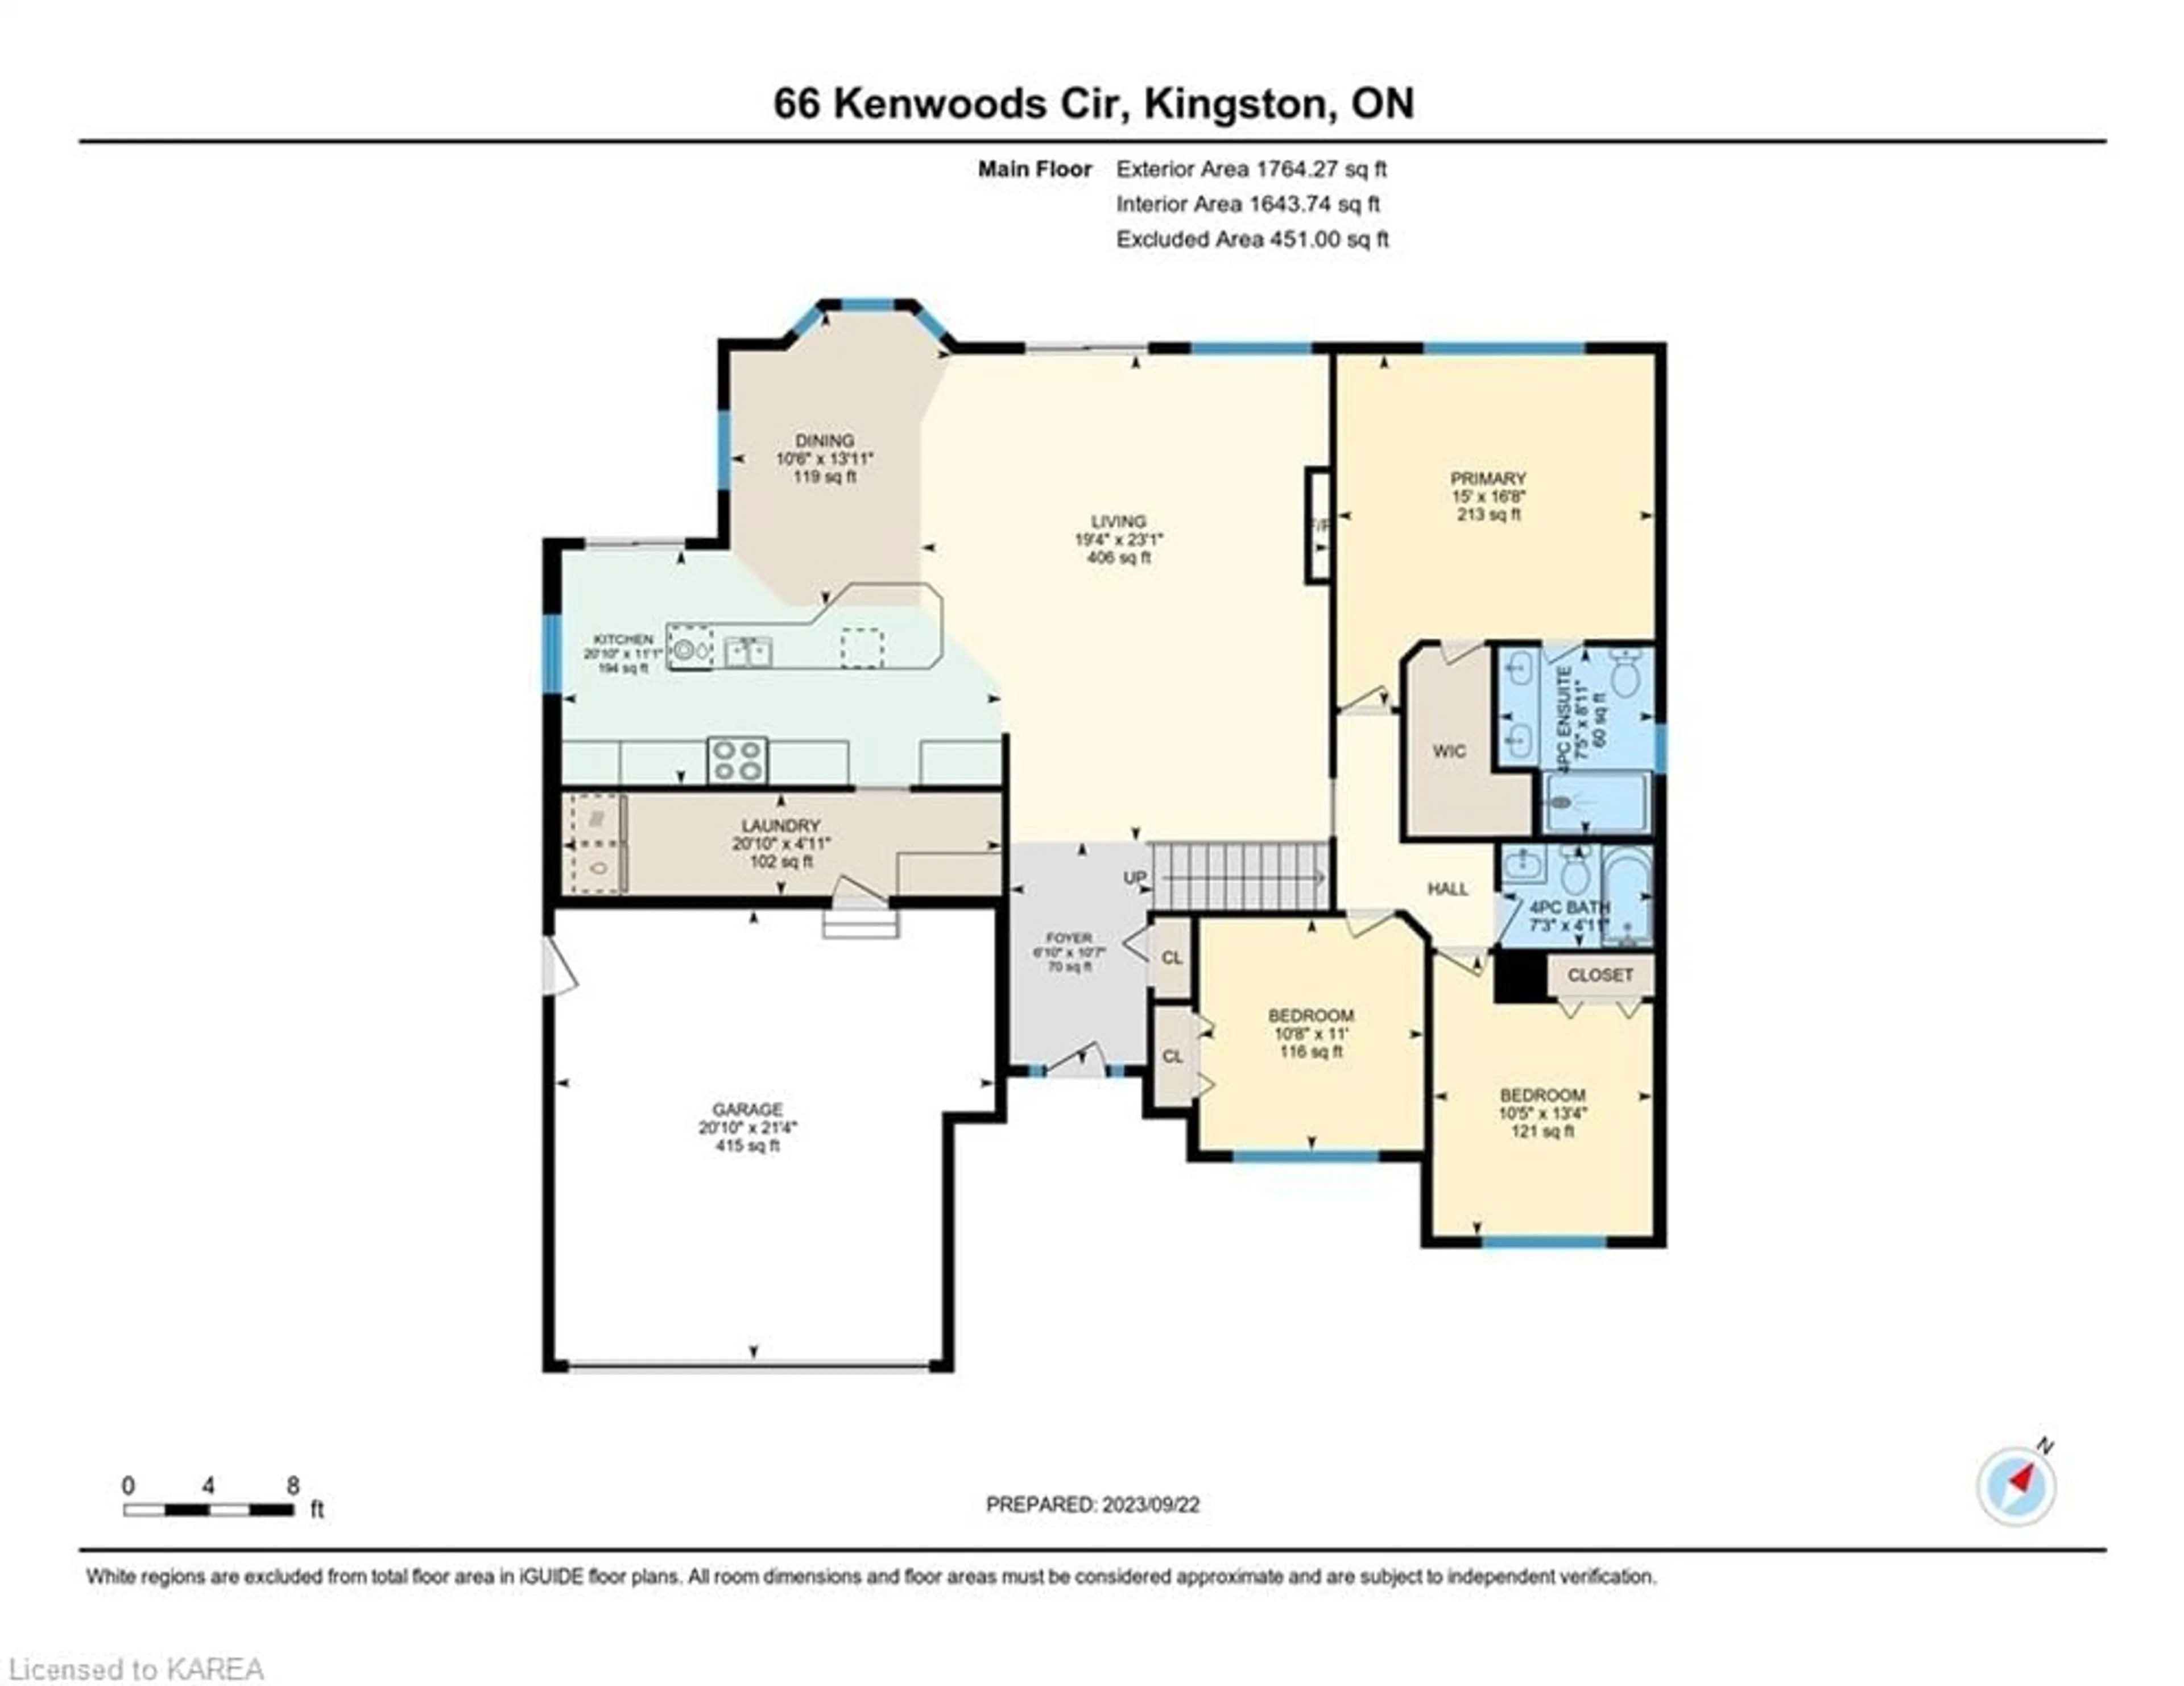 Floor plan for 66 Kenwoods Cir, Kingston Ontario K7K 6Y1